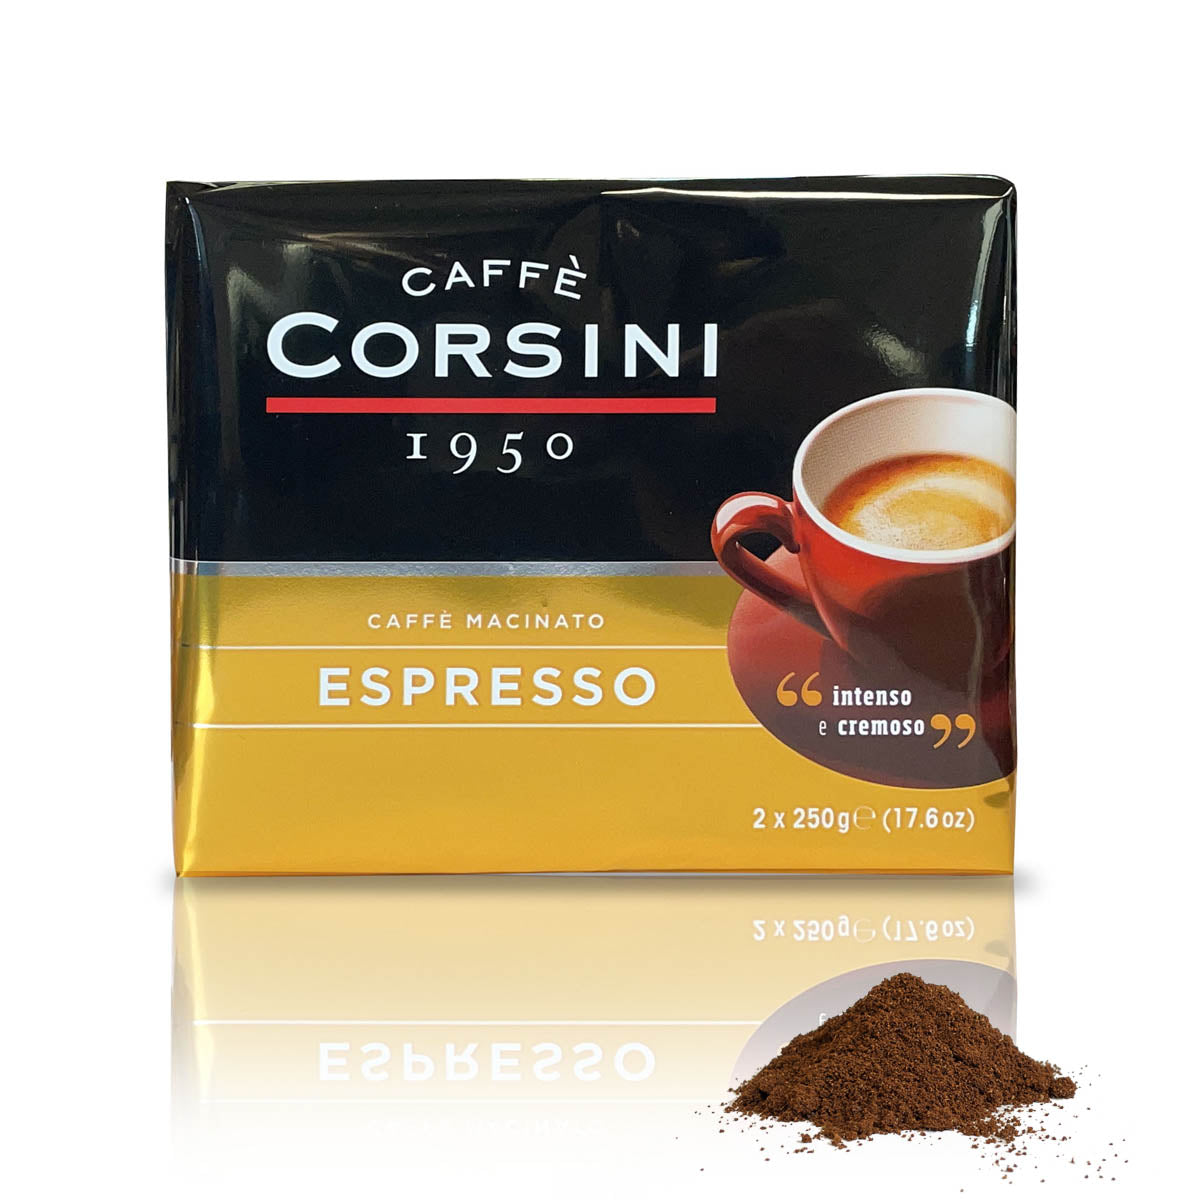 Caffè macinato per Espresso | Confezione con 2 pacchetti da 250g l'uno